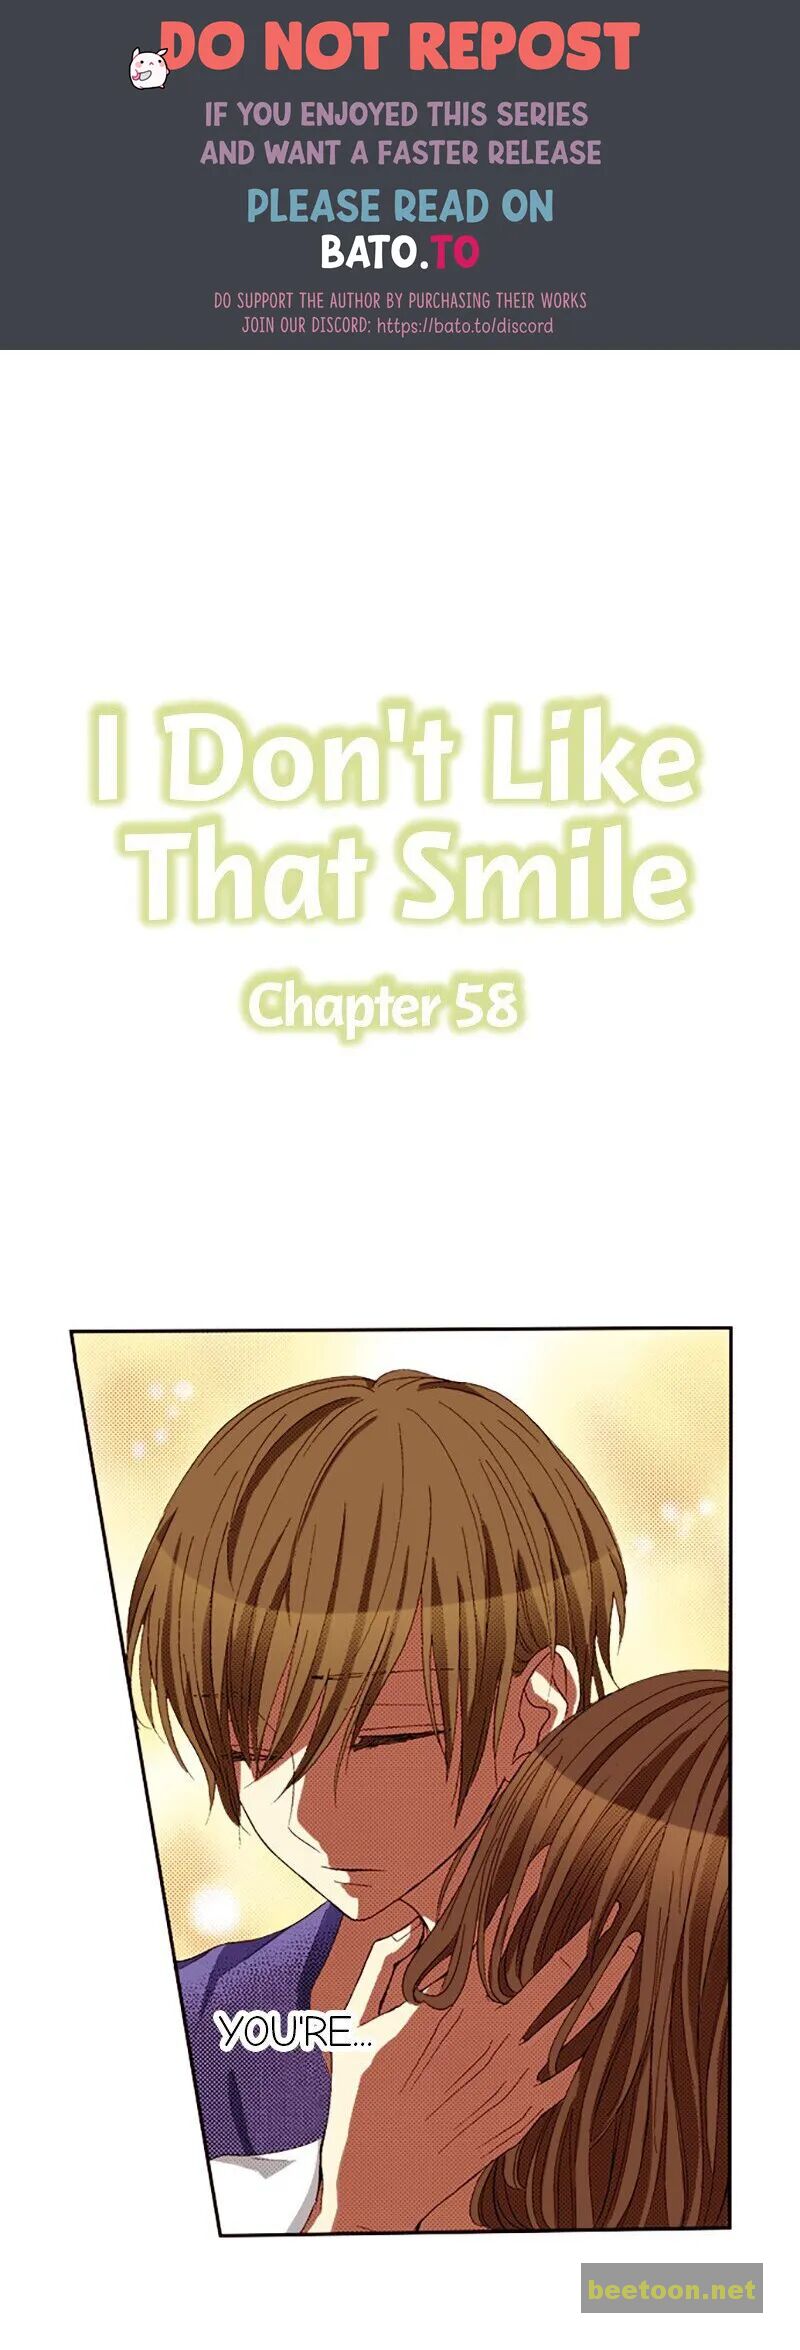 I Don’t Like That Smile Chapter 58 - HolyManga.net